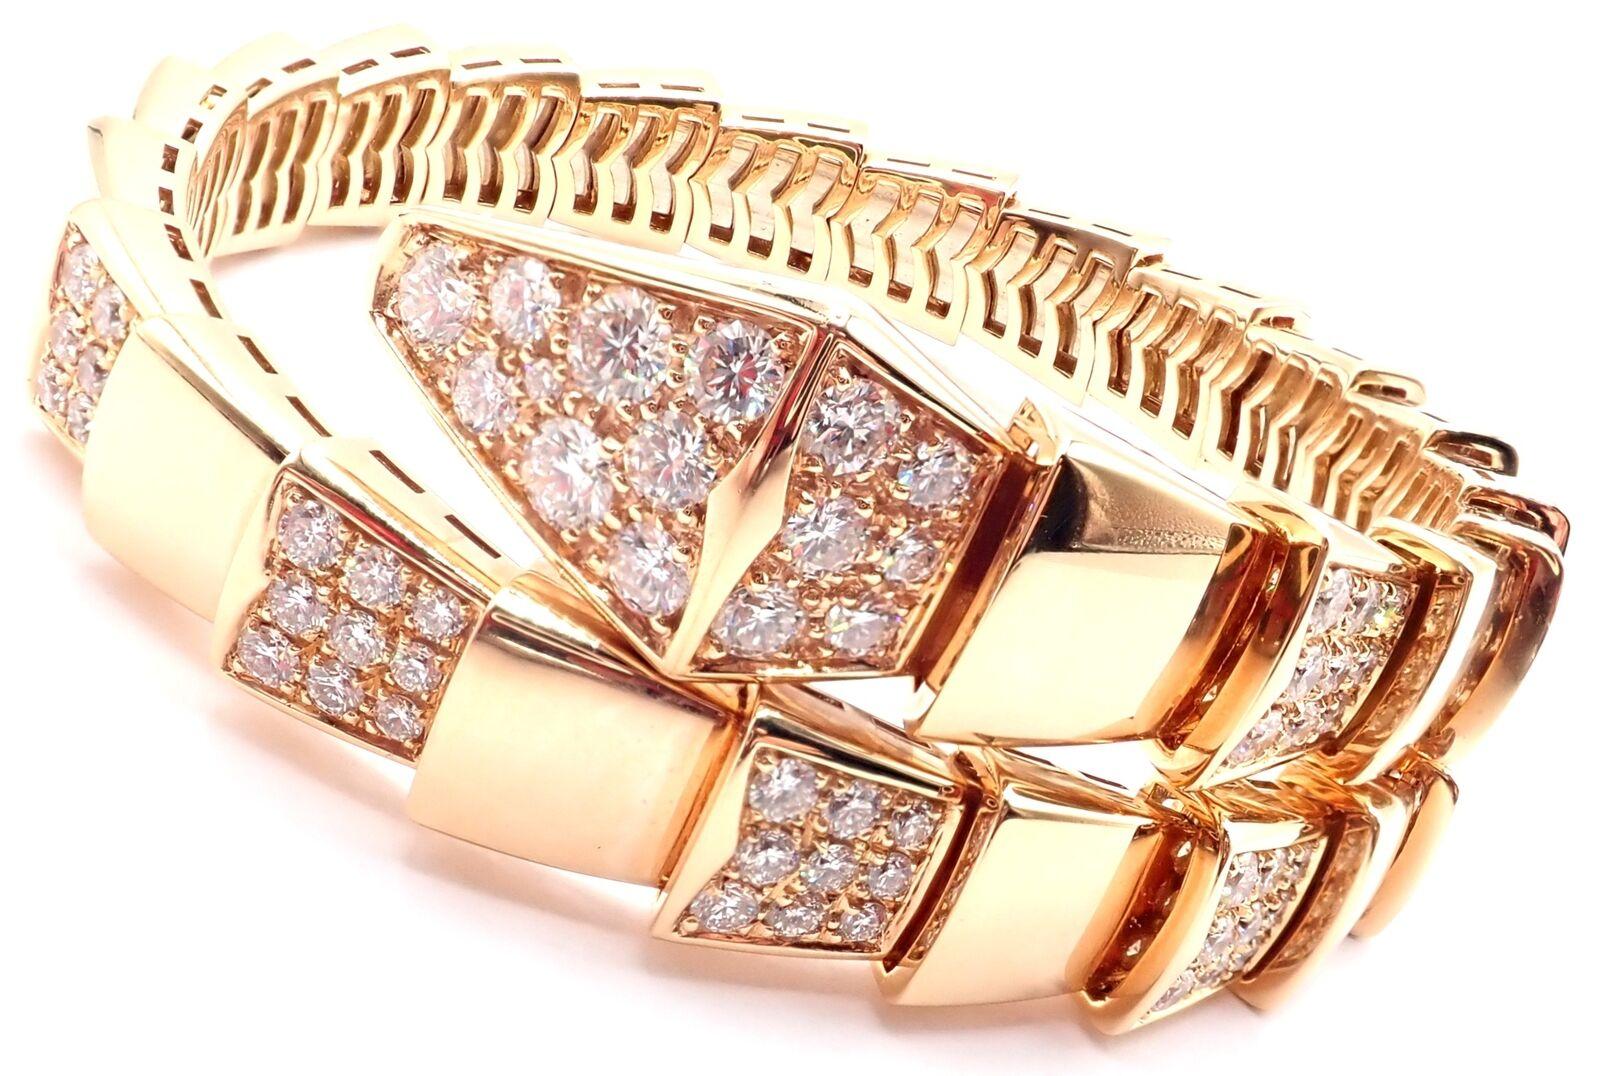 Pulsera brazalete serpiente Serpenti de oro rosa de 18 quilates de Bulgari. 
Con 127 diamantes redondos talla brillante claridad VVS1, color E peso total aproximado 7ct.
Detalles:
Talla: Talla mediana, 17 cm, 6,7